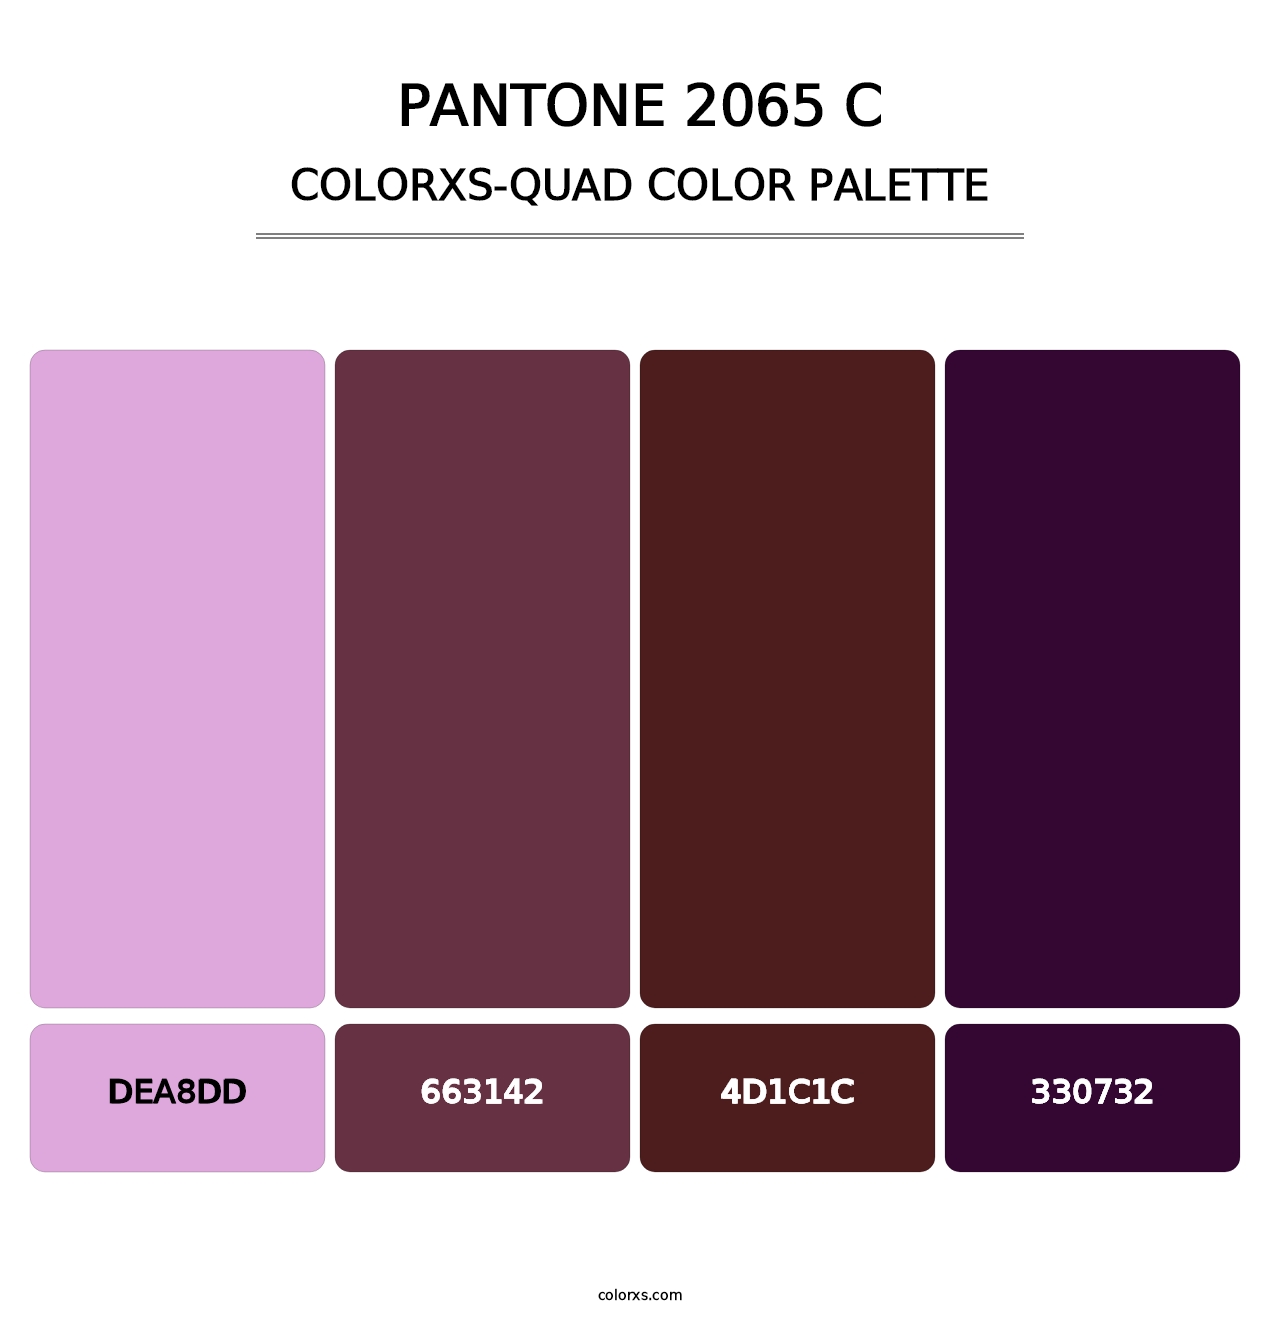 PANTONE 2065 C - Colorxs Quad Palette